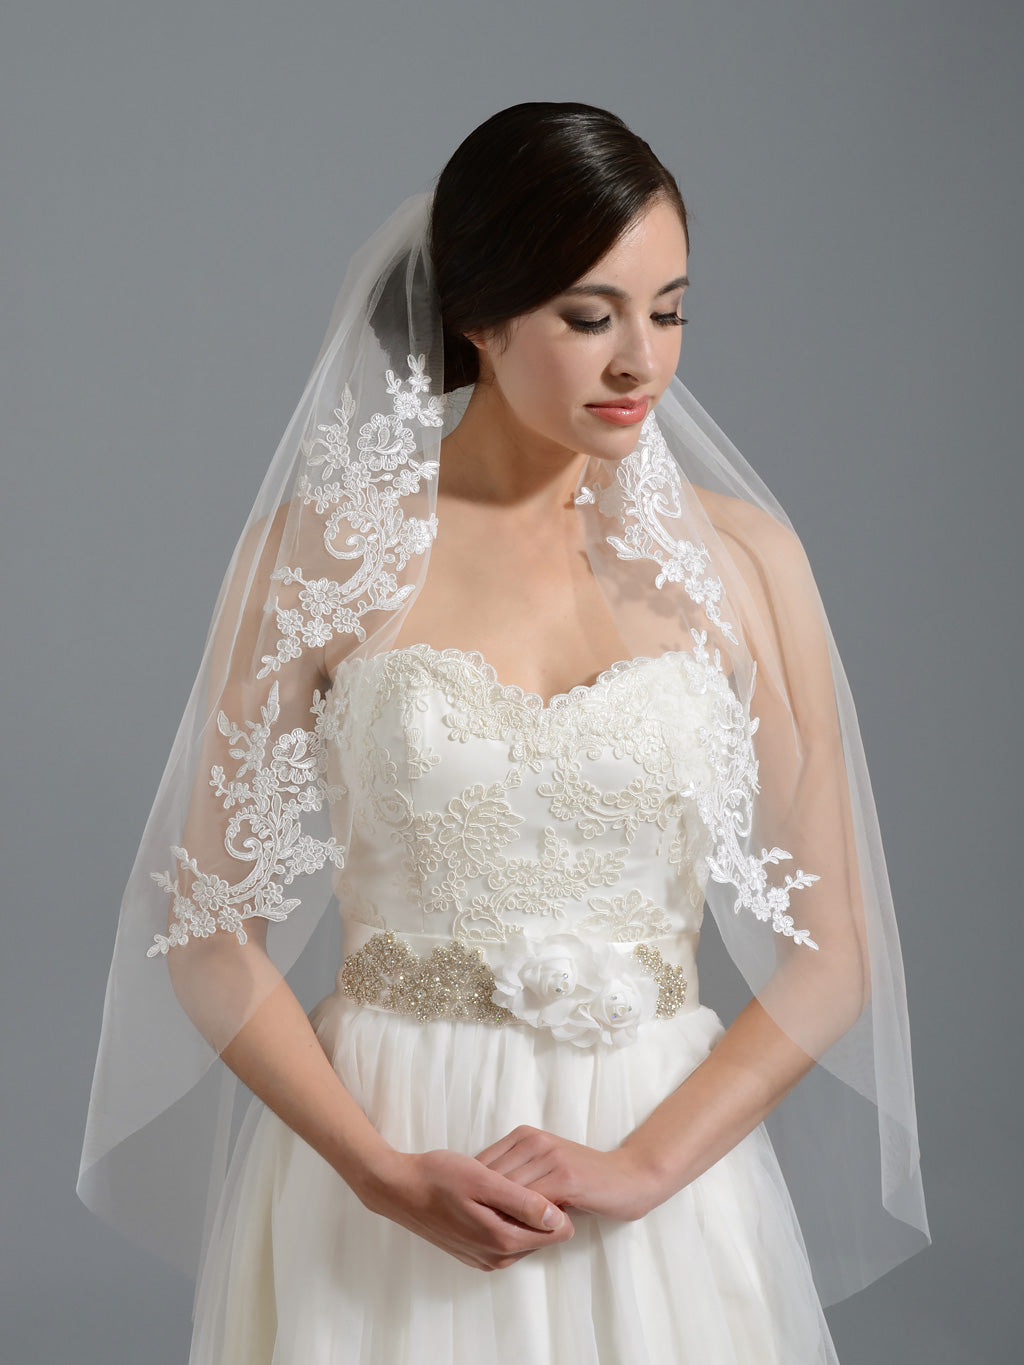 Ivory elbow wedding veil V051n alencon lace